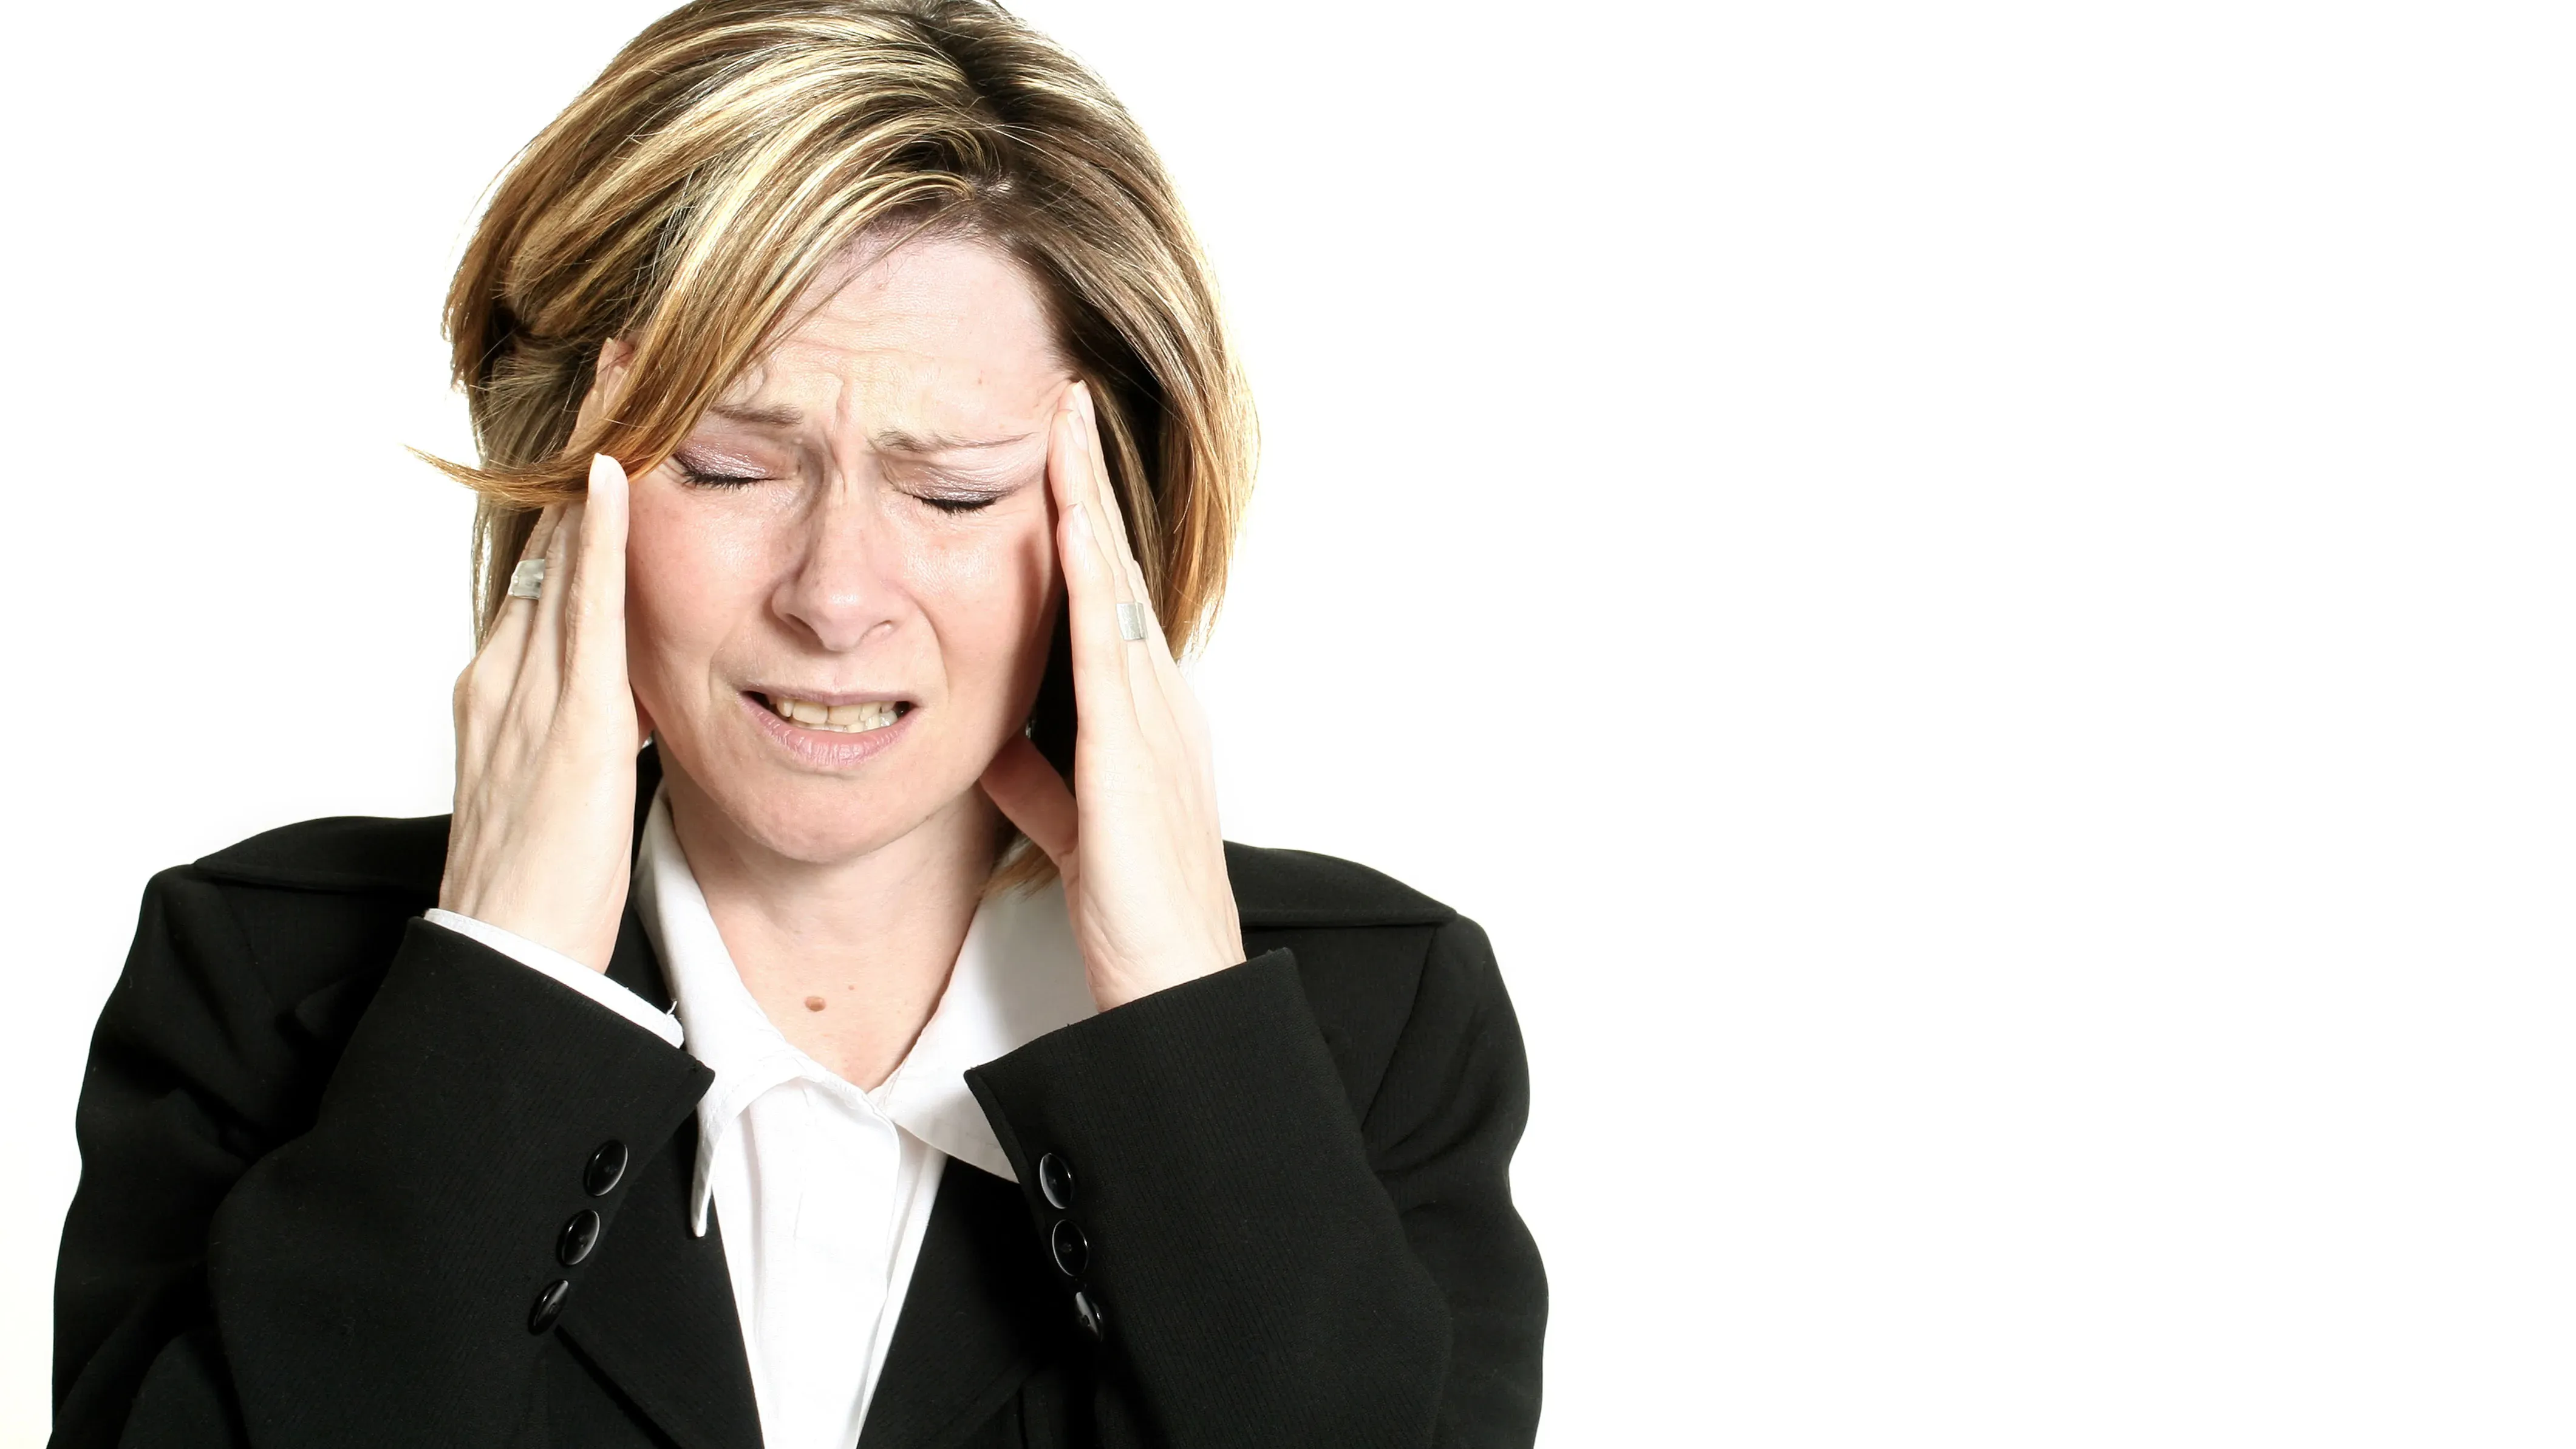 Migräne während der Menstruation: mögliche Ursache entdeckt